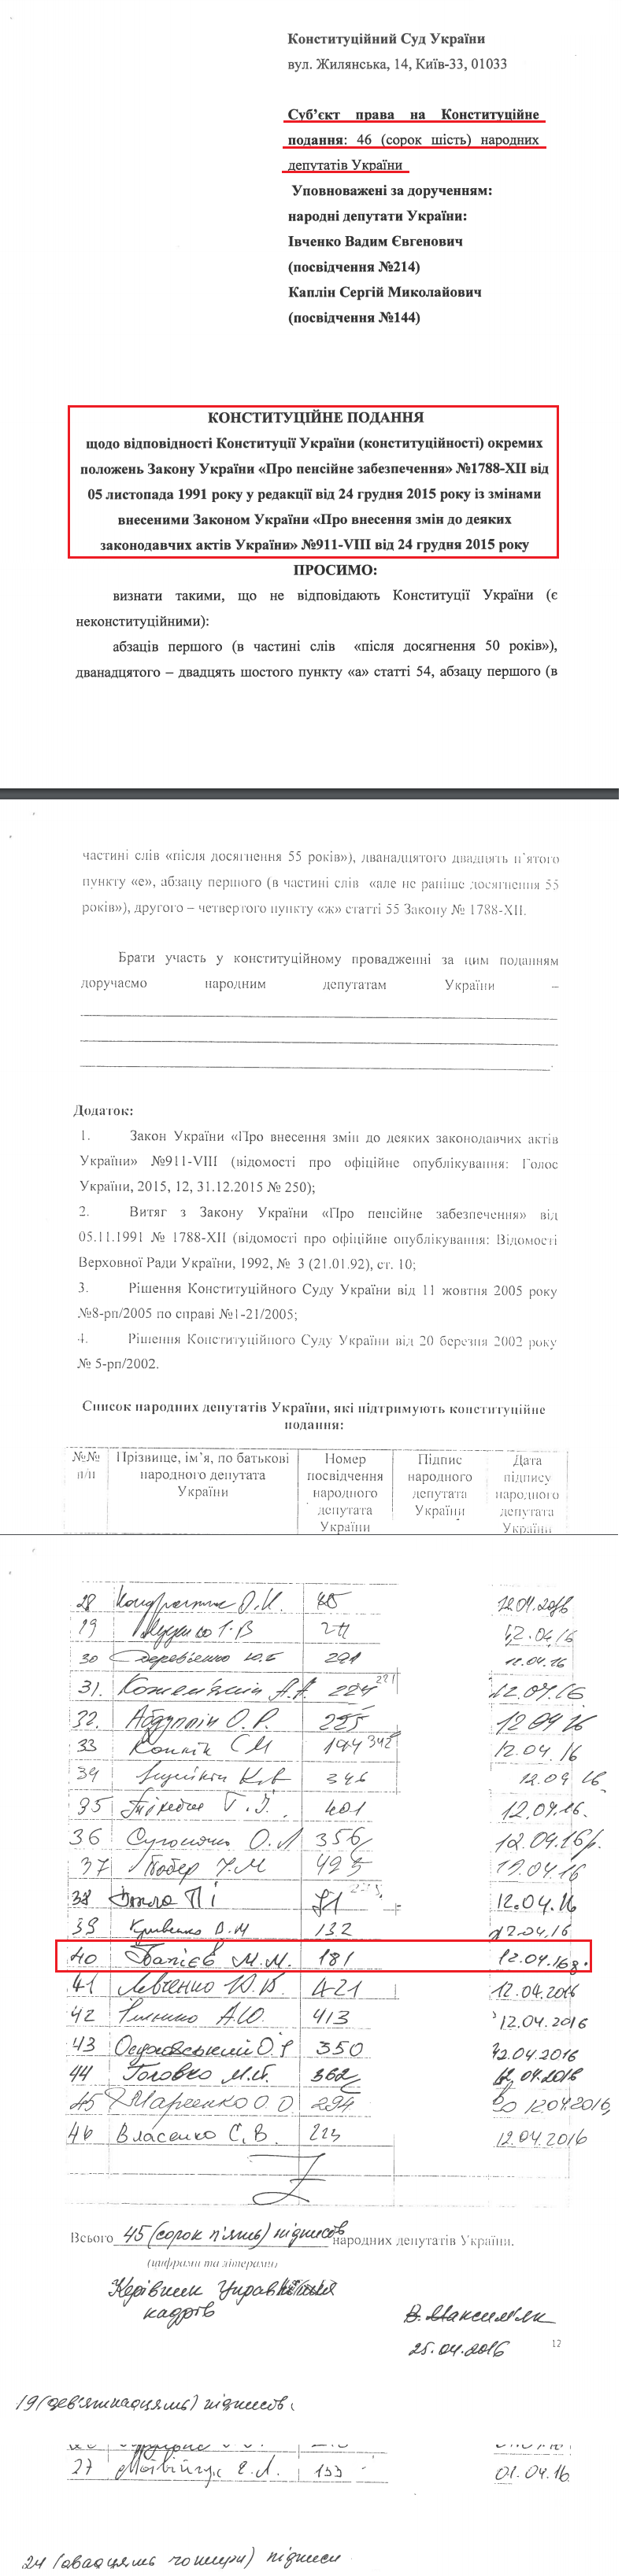 http://ccu.gov.ua/doccatalog/document?id=310527